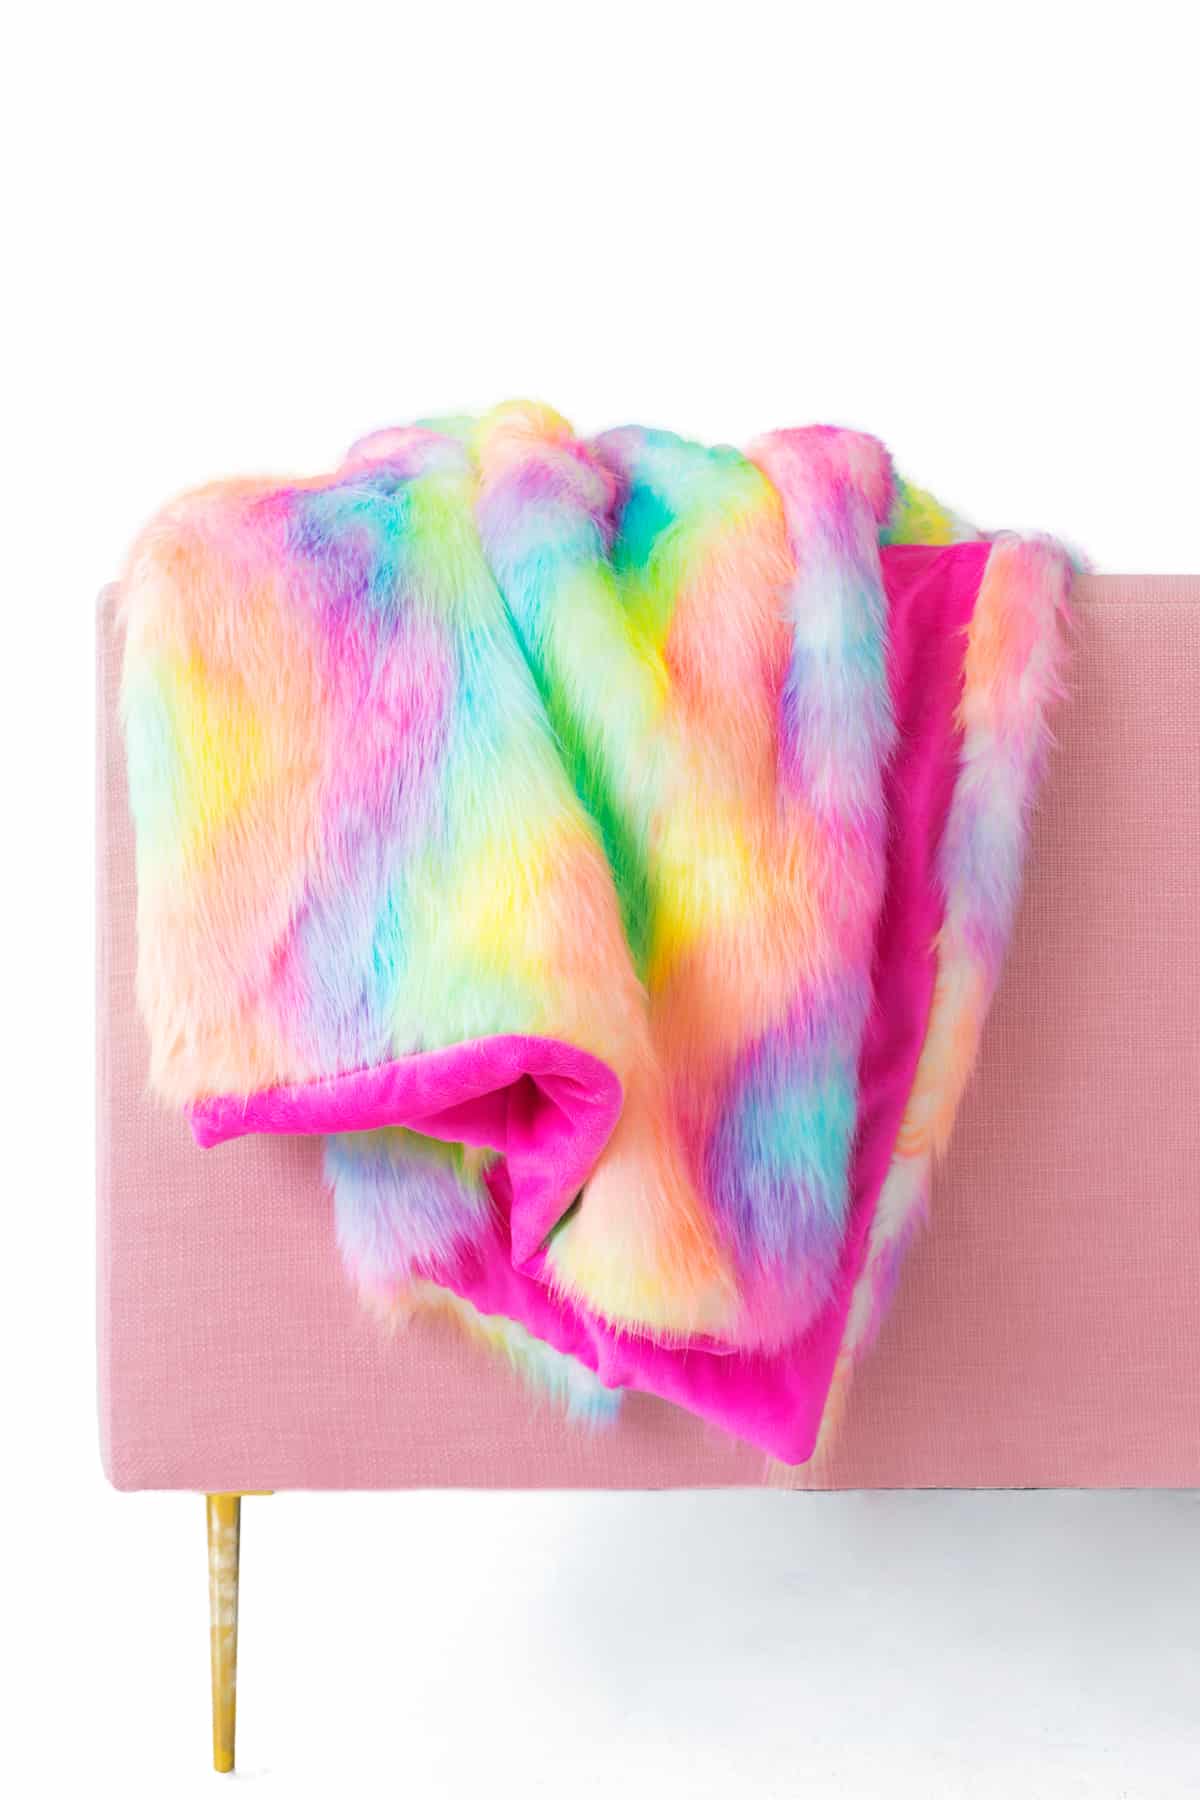 Technicolour faux fur blanket